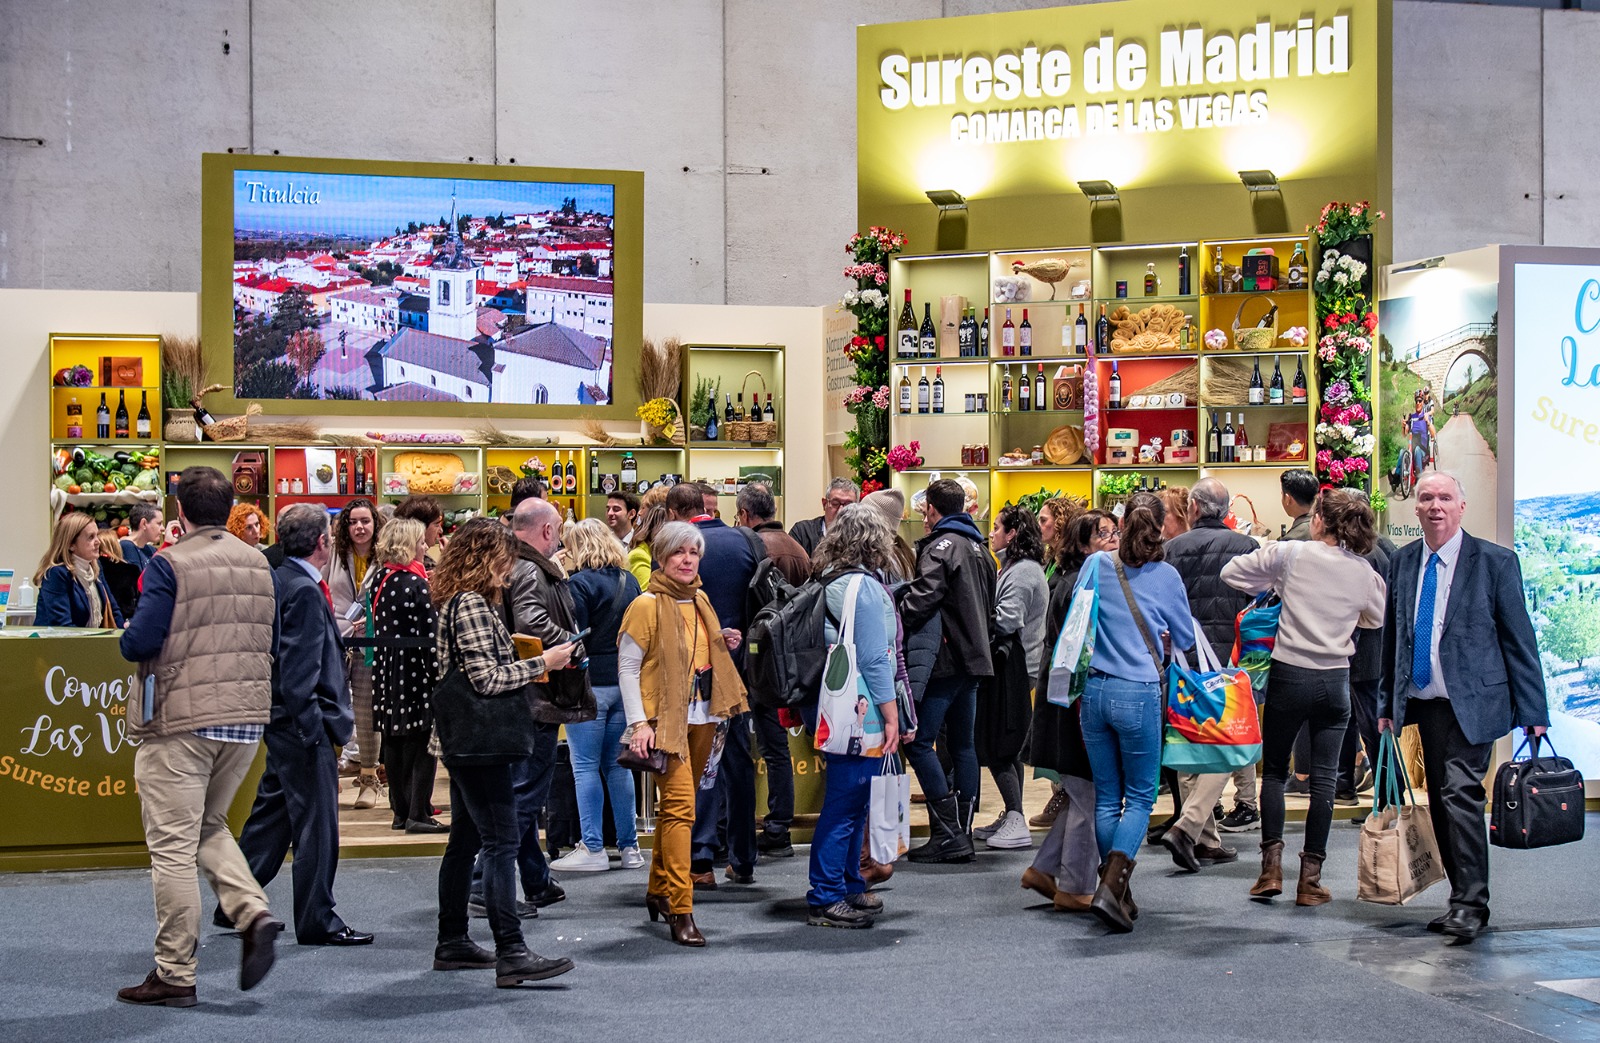 El Sureste de Madrid se presenta en FITUR con el reto de seguir aumentando sus visitantes